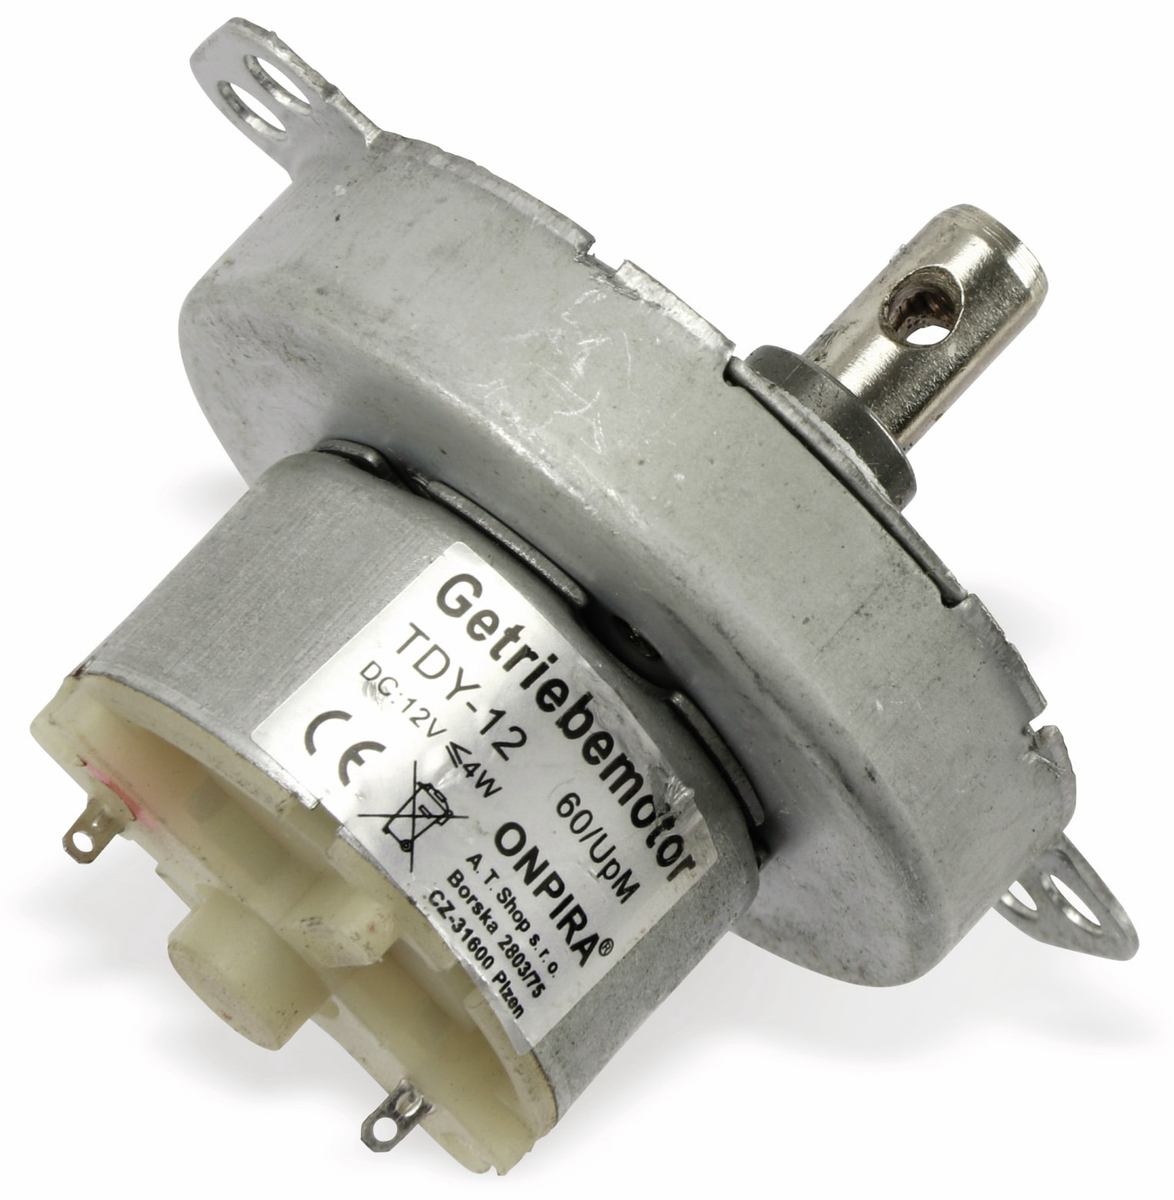 Gleichstrom-Getriebemotor TDY-12, 12 V-, 0,18 A, 60 U/min online